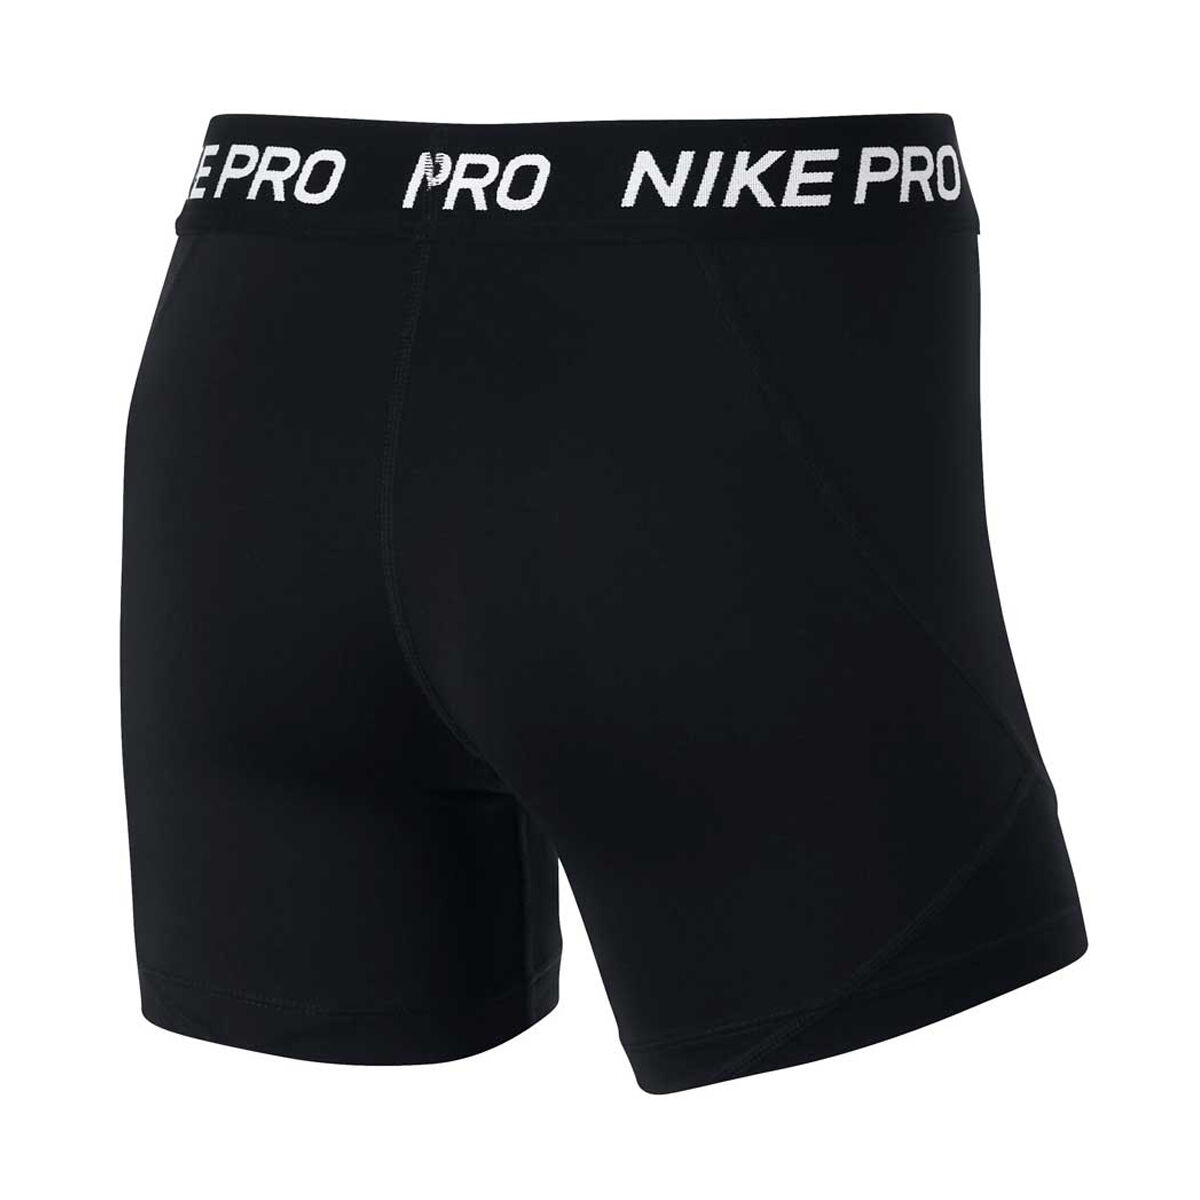 nike pro boys underwear